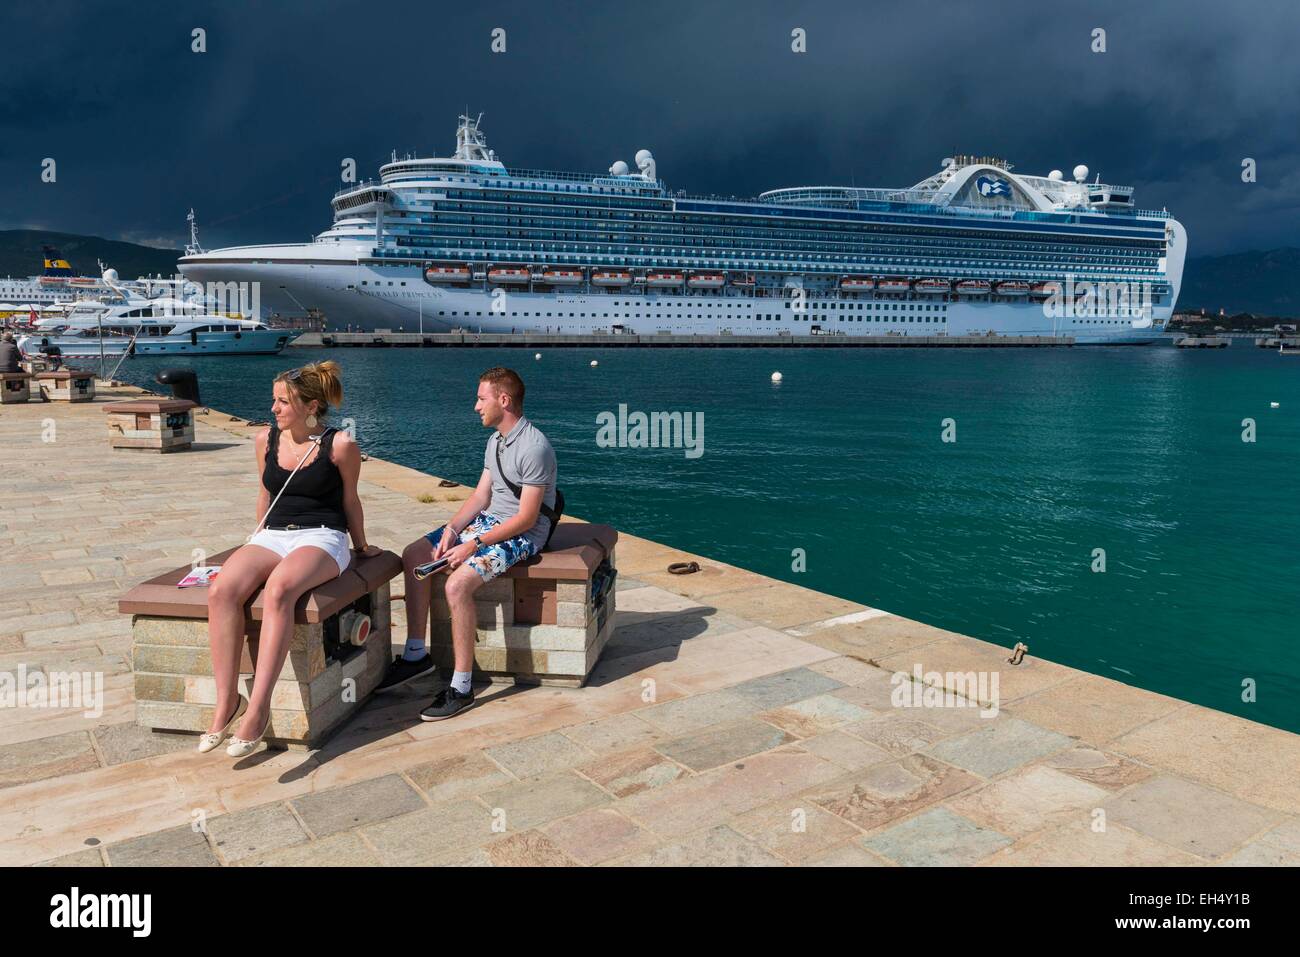 France, Corse du Sud, Ajaccio, couple in front of the Emerald Princess in Ajaccio port Stock Photo